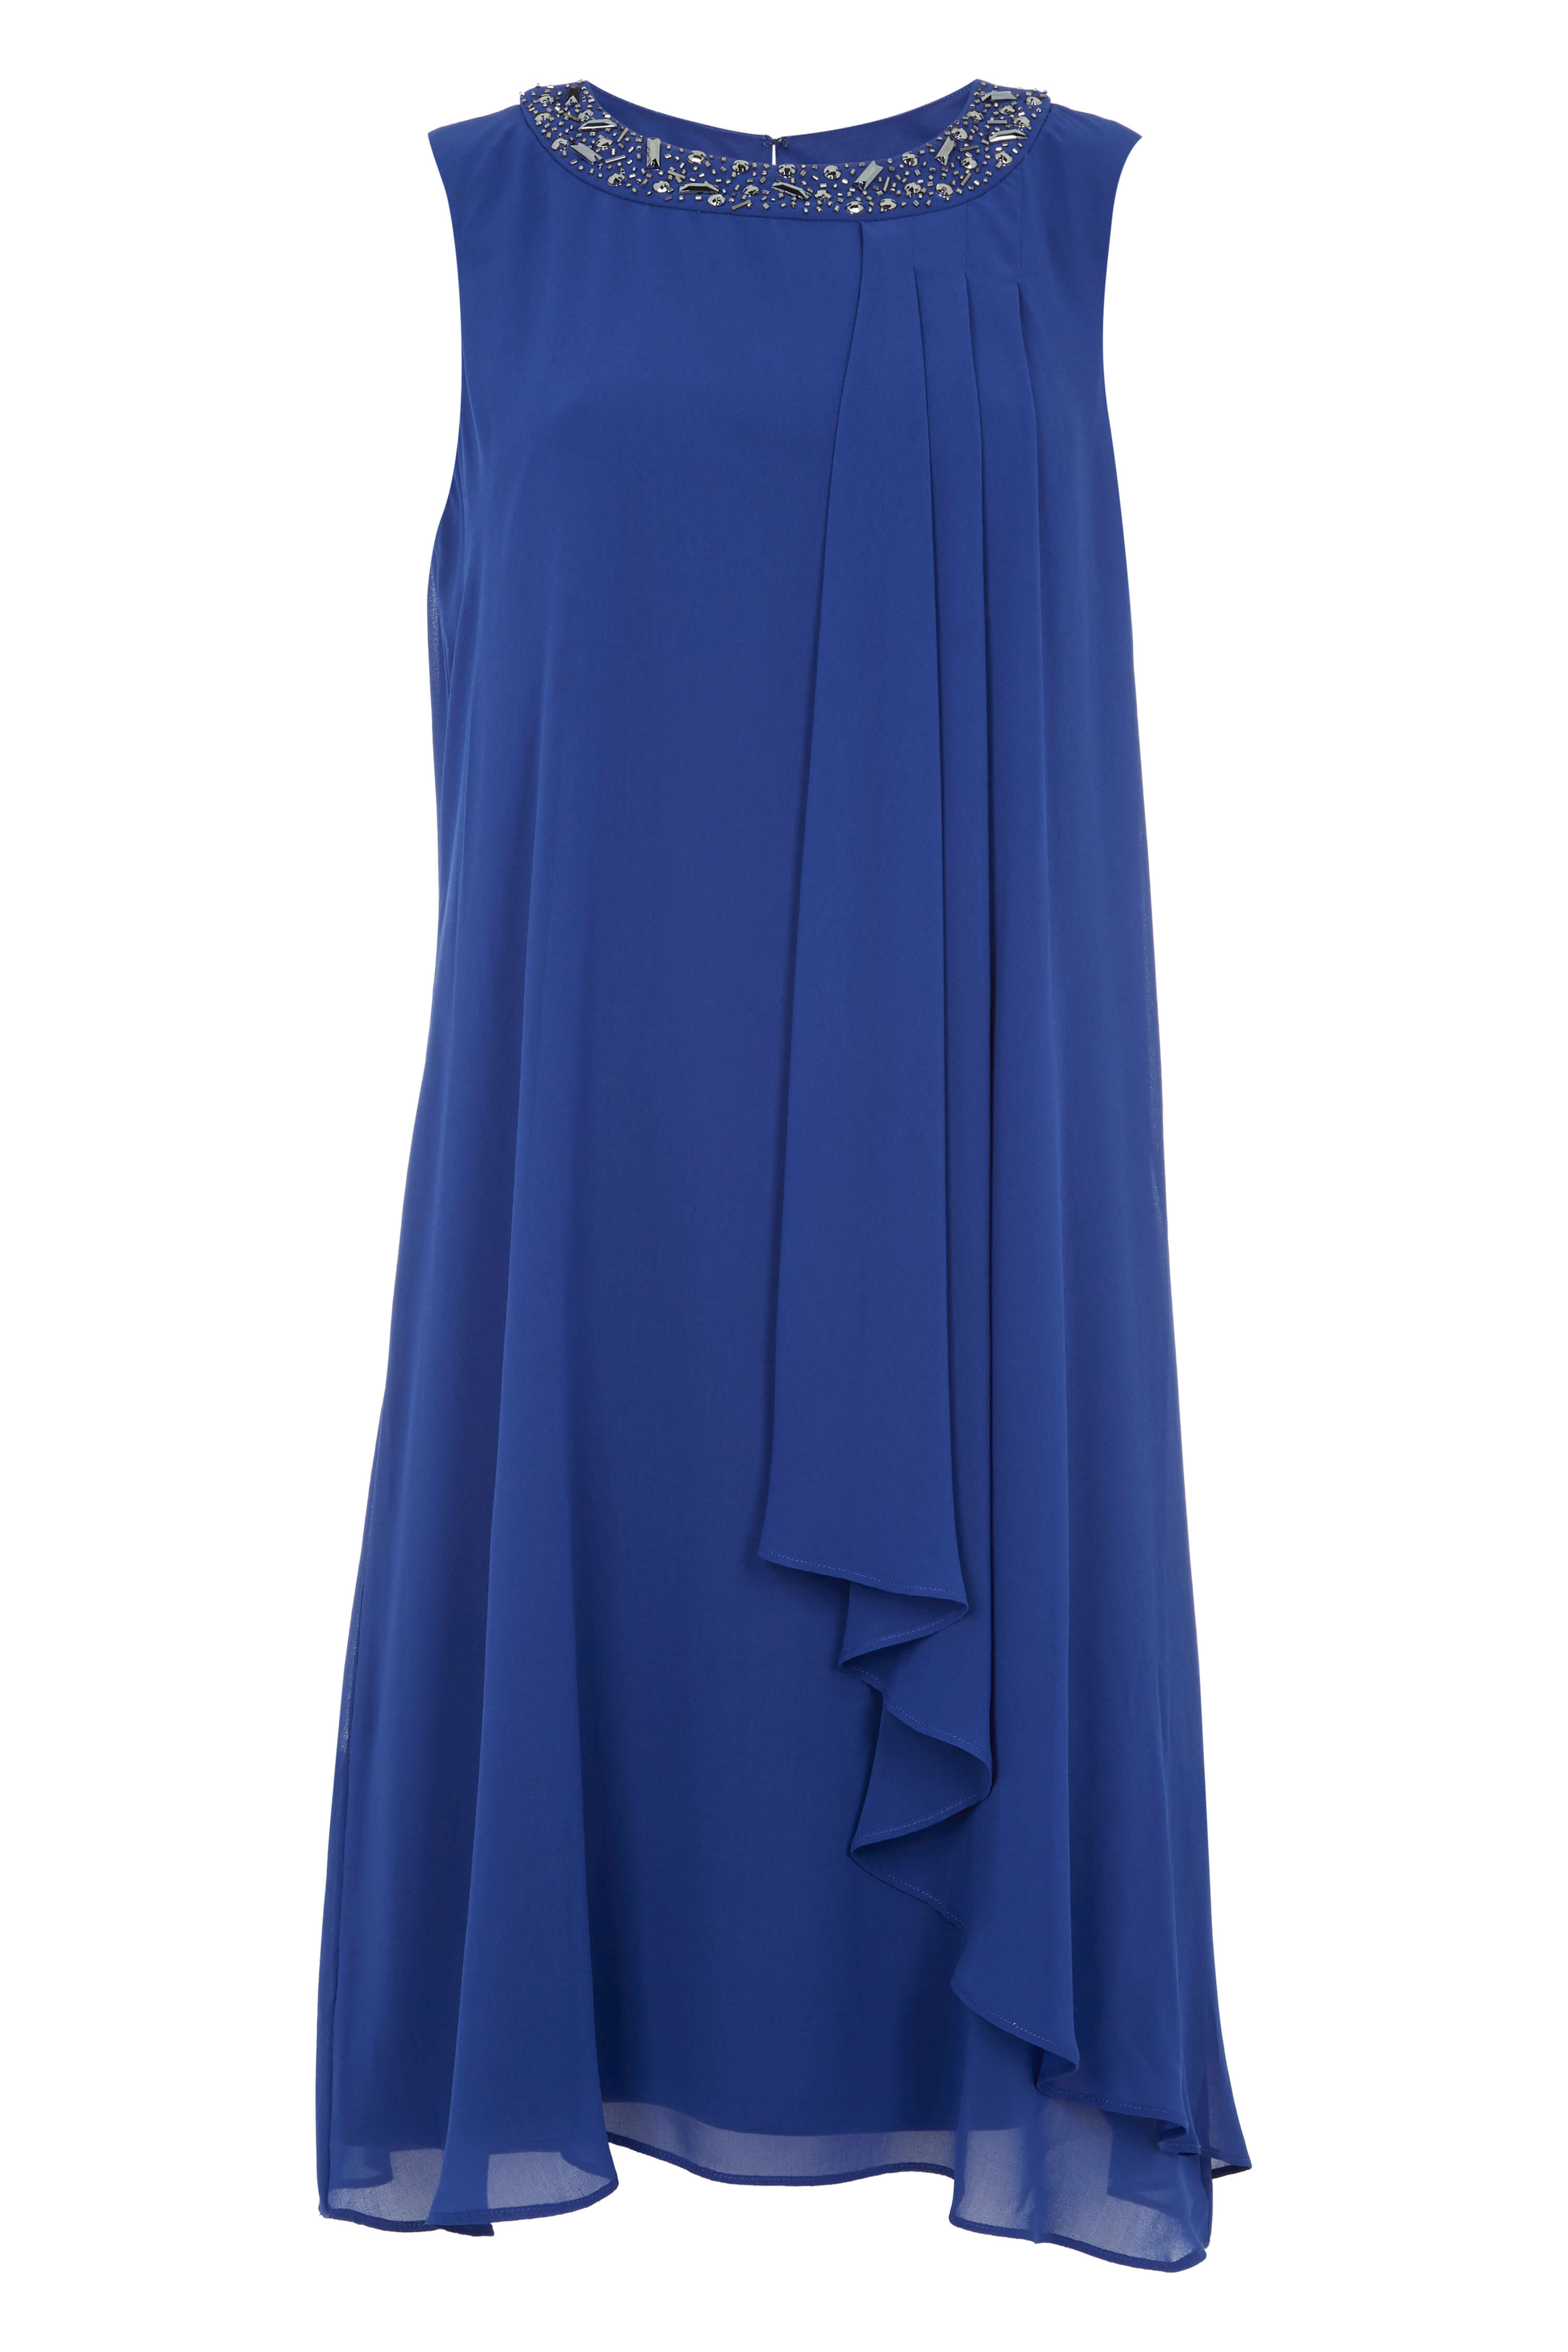 Royal-Blue Embellished Neck Chiffon Dress, Image 6 of 6